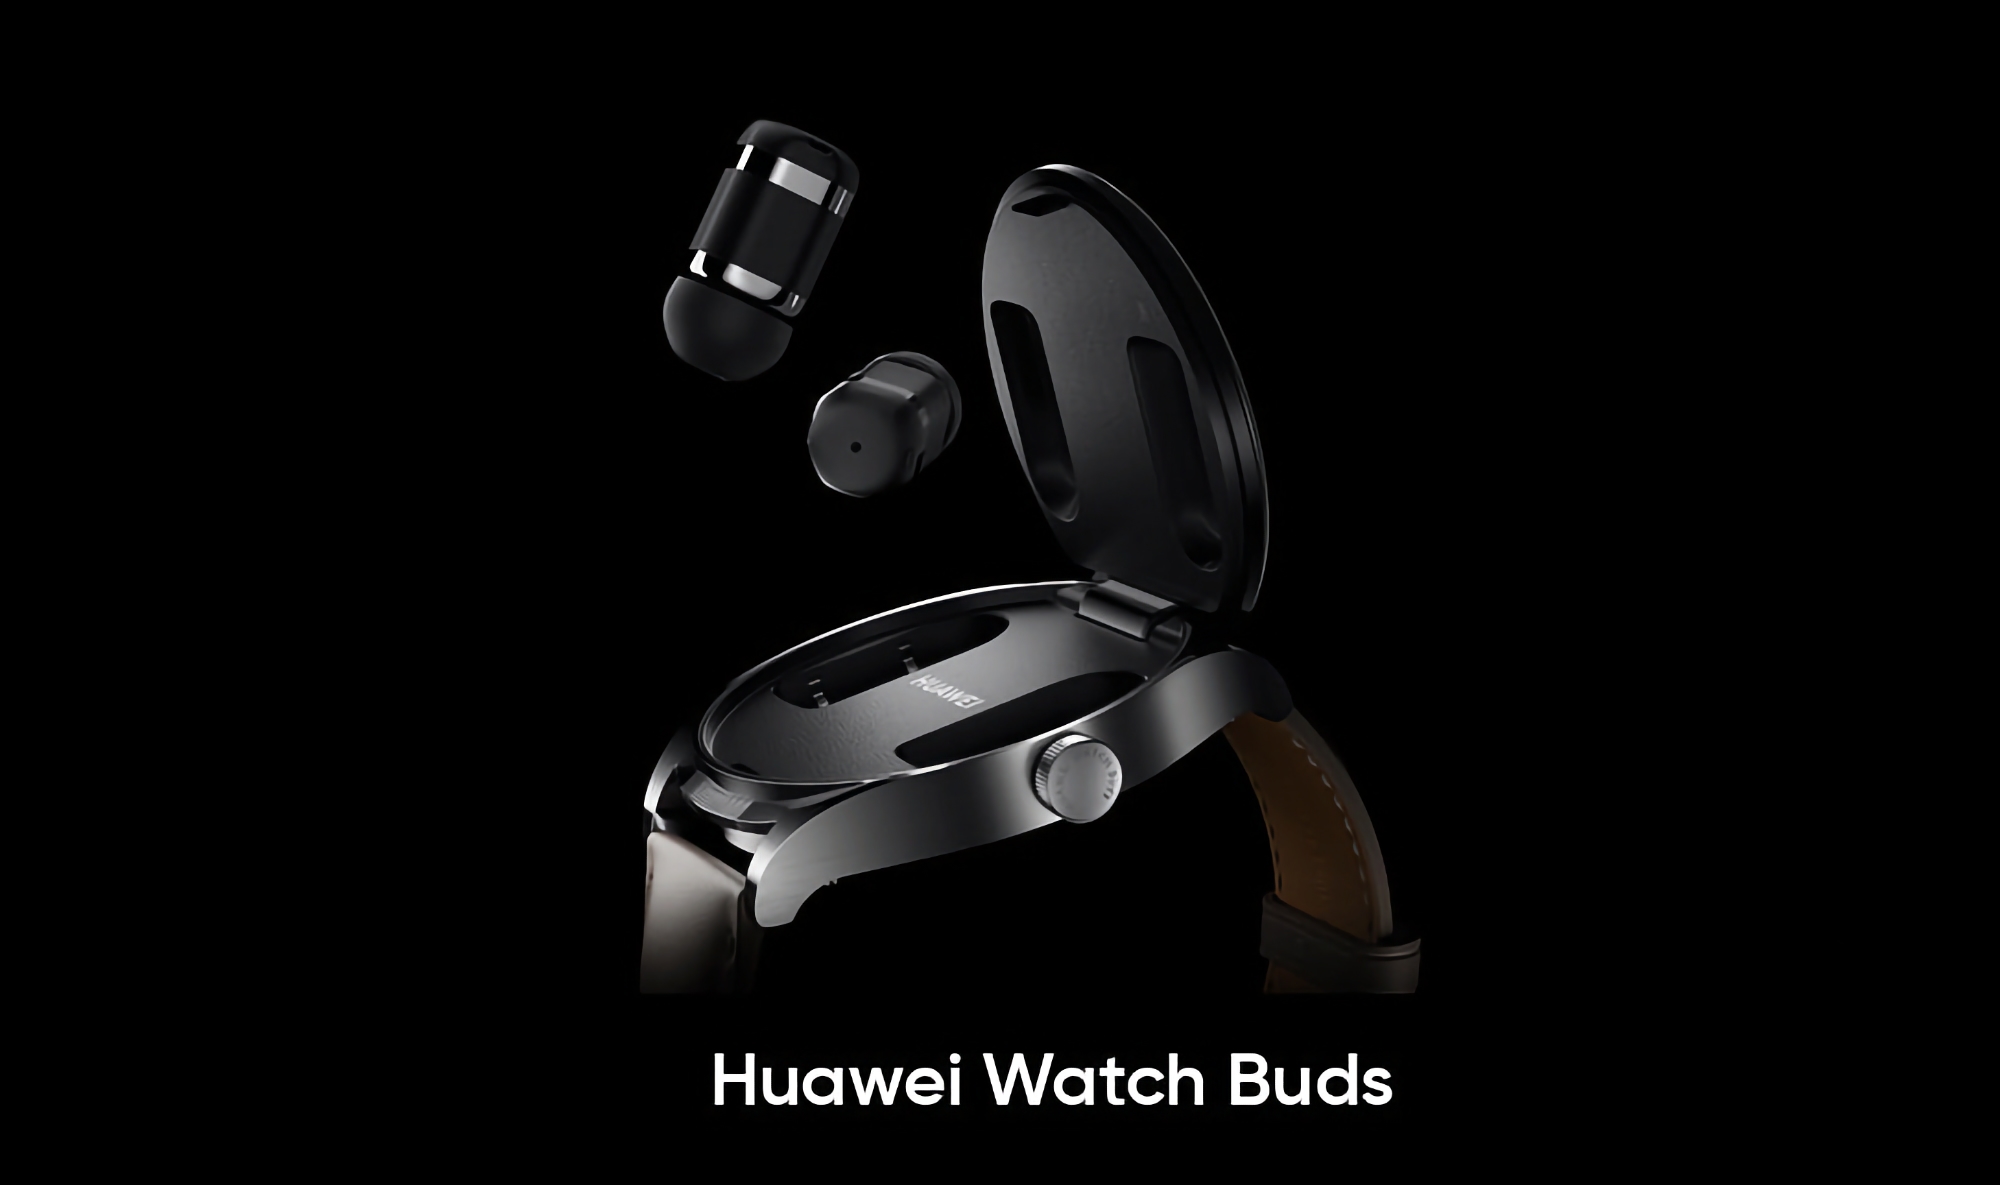 Gerücht: Huawei Watch Buds mit AMOLED-Bildschirm, SpO2-Sensor und integrierten Kopfhörern sollen weltweit auf den Markt kommen